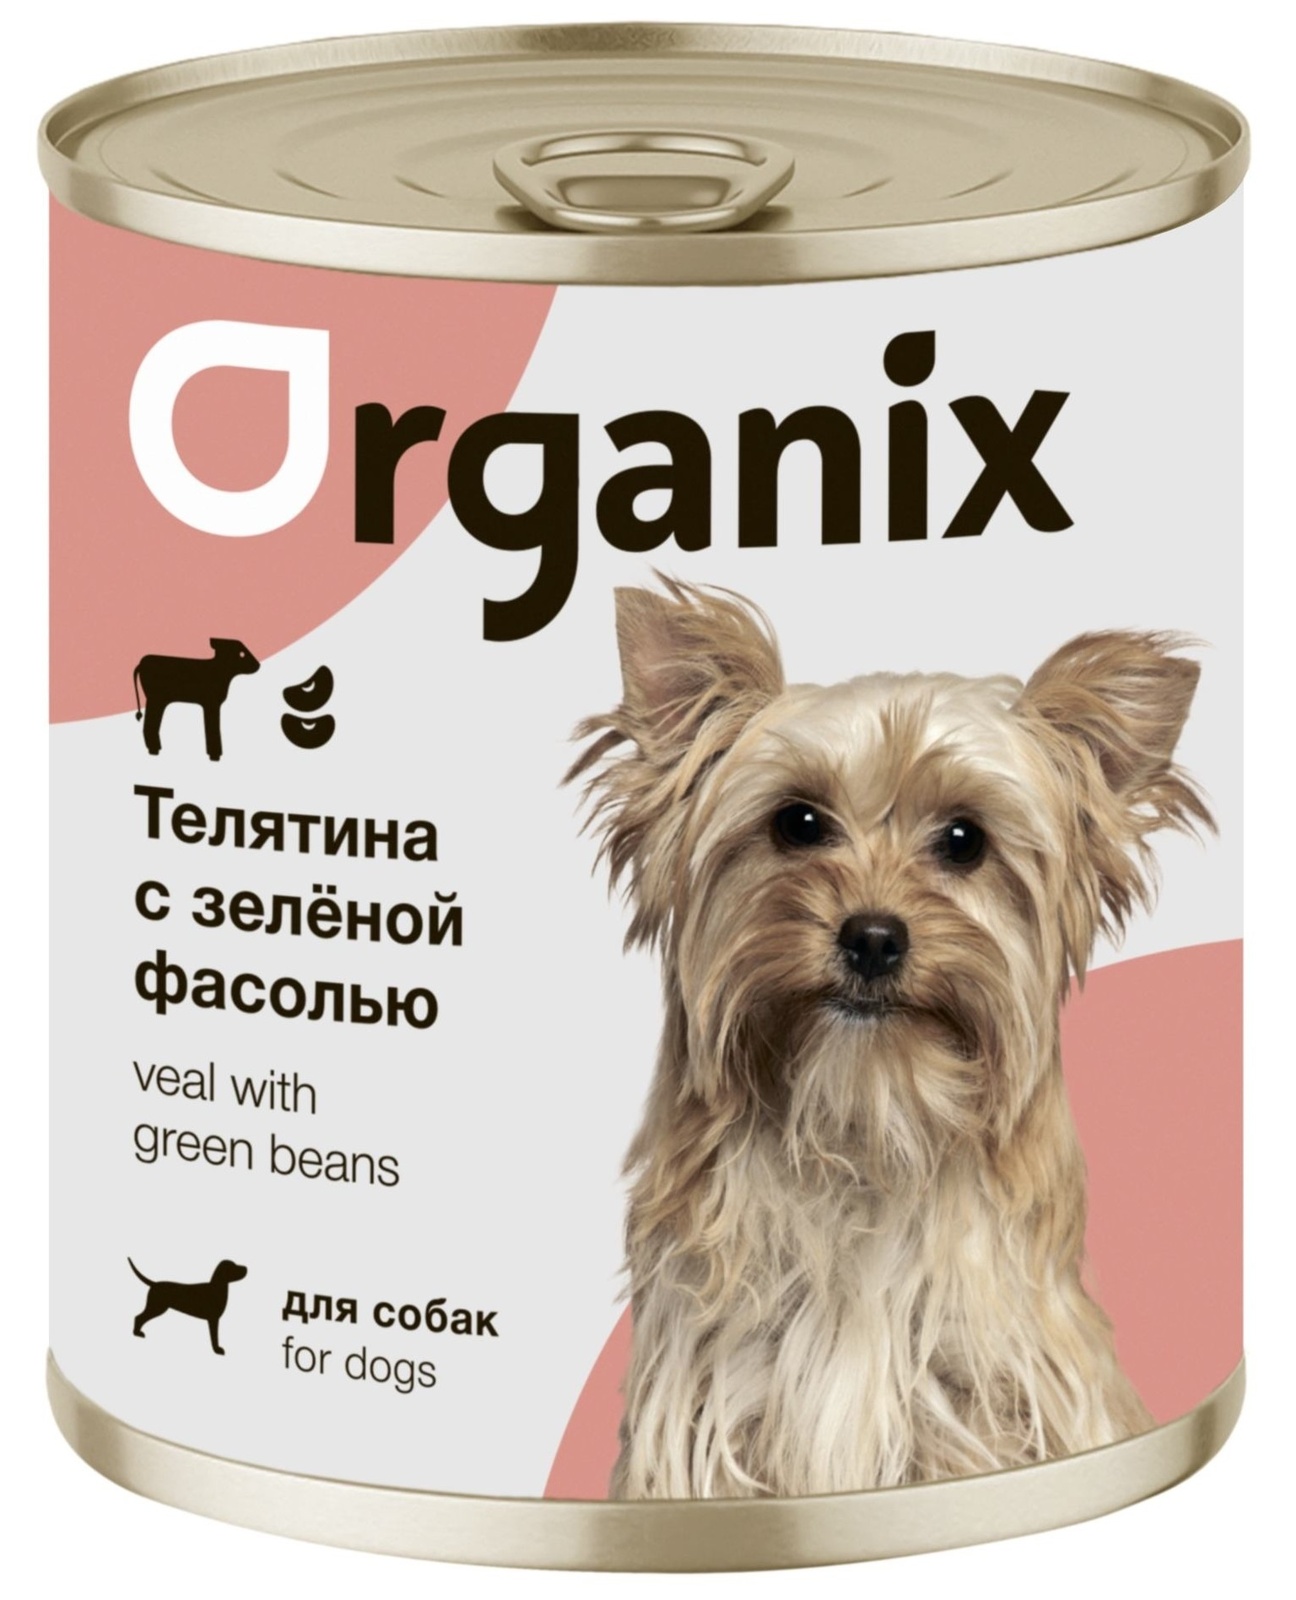 Organix консервы Organix консервы для собак Телятина с зеленой фасолью (400 г) organix консервы organix консервы для собак индейка с овощным ассорти 400 г